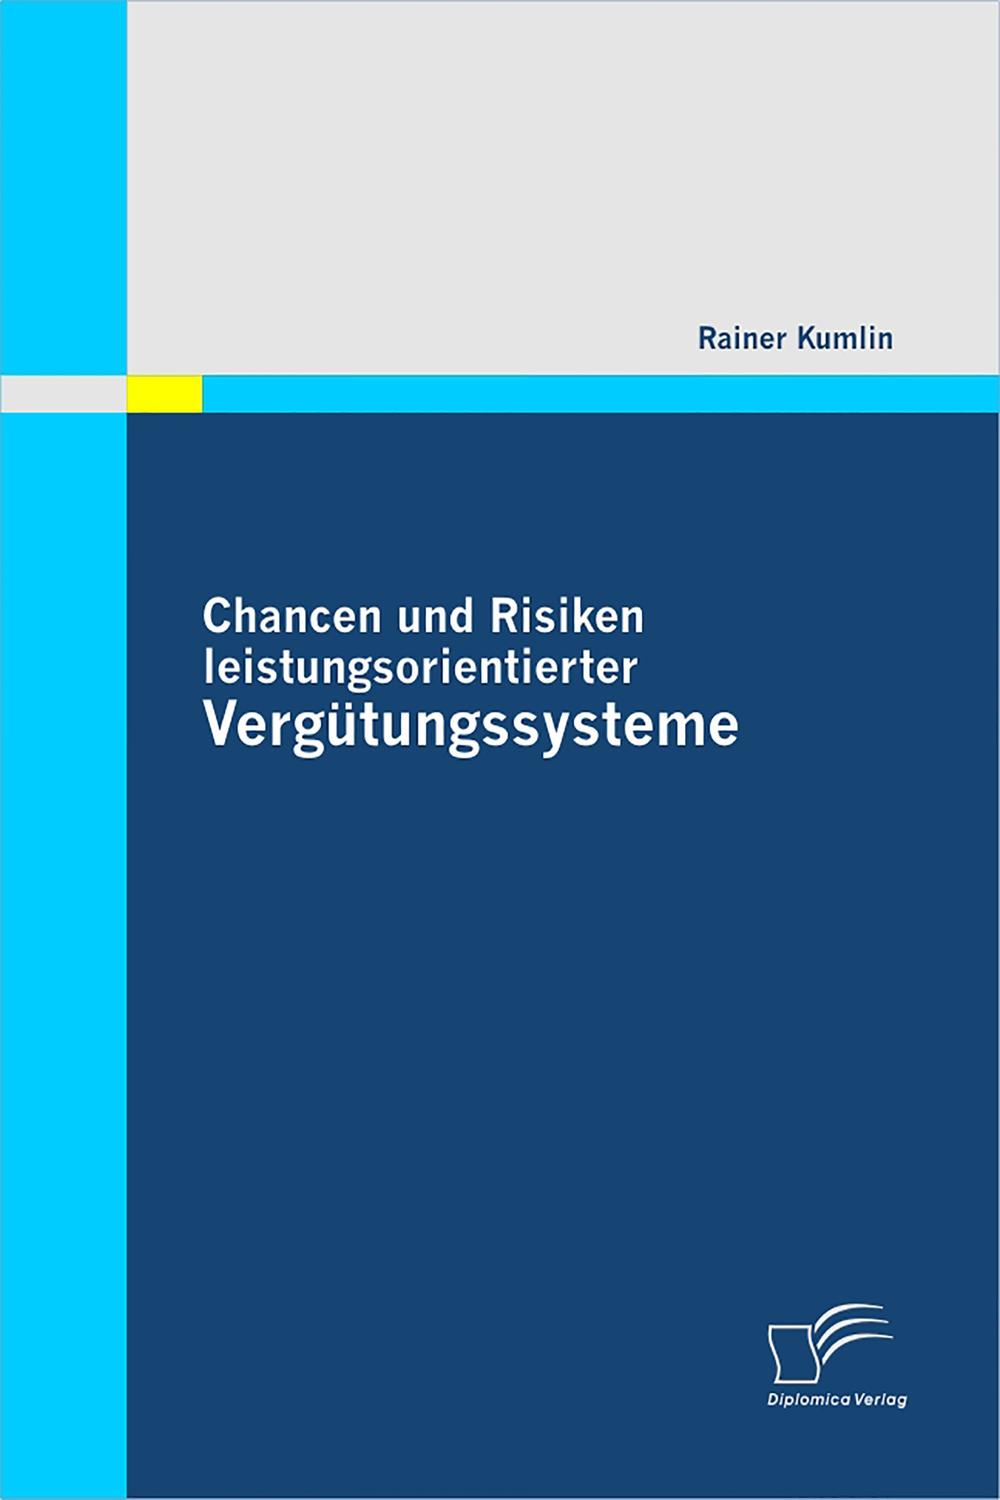 Chancen und Risiken leistungsorientierter Vergütungssysteme - Rainer Kumlin